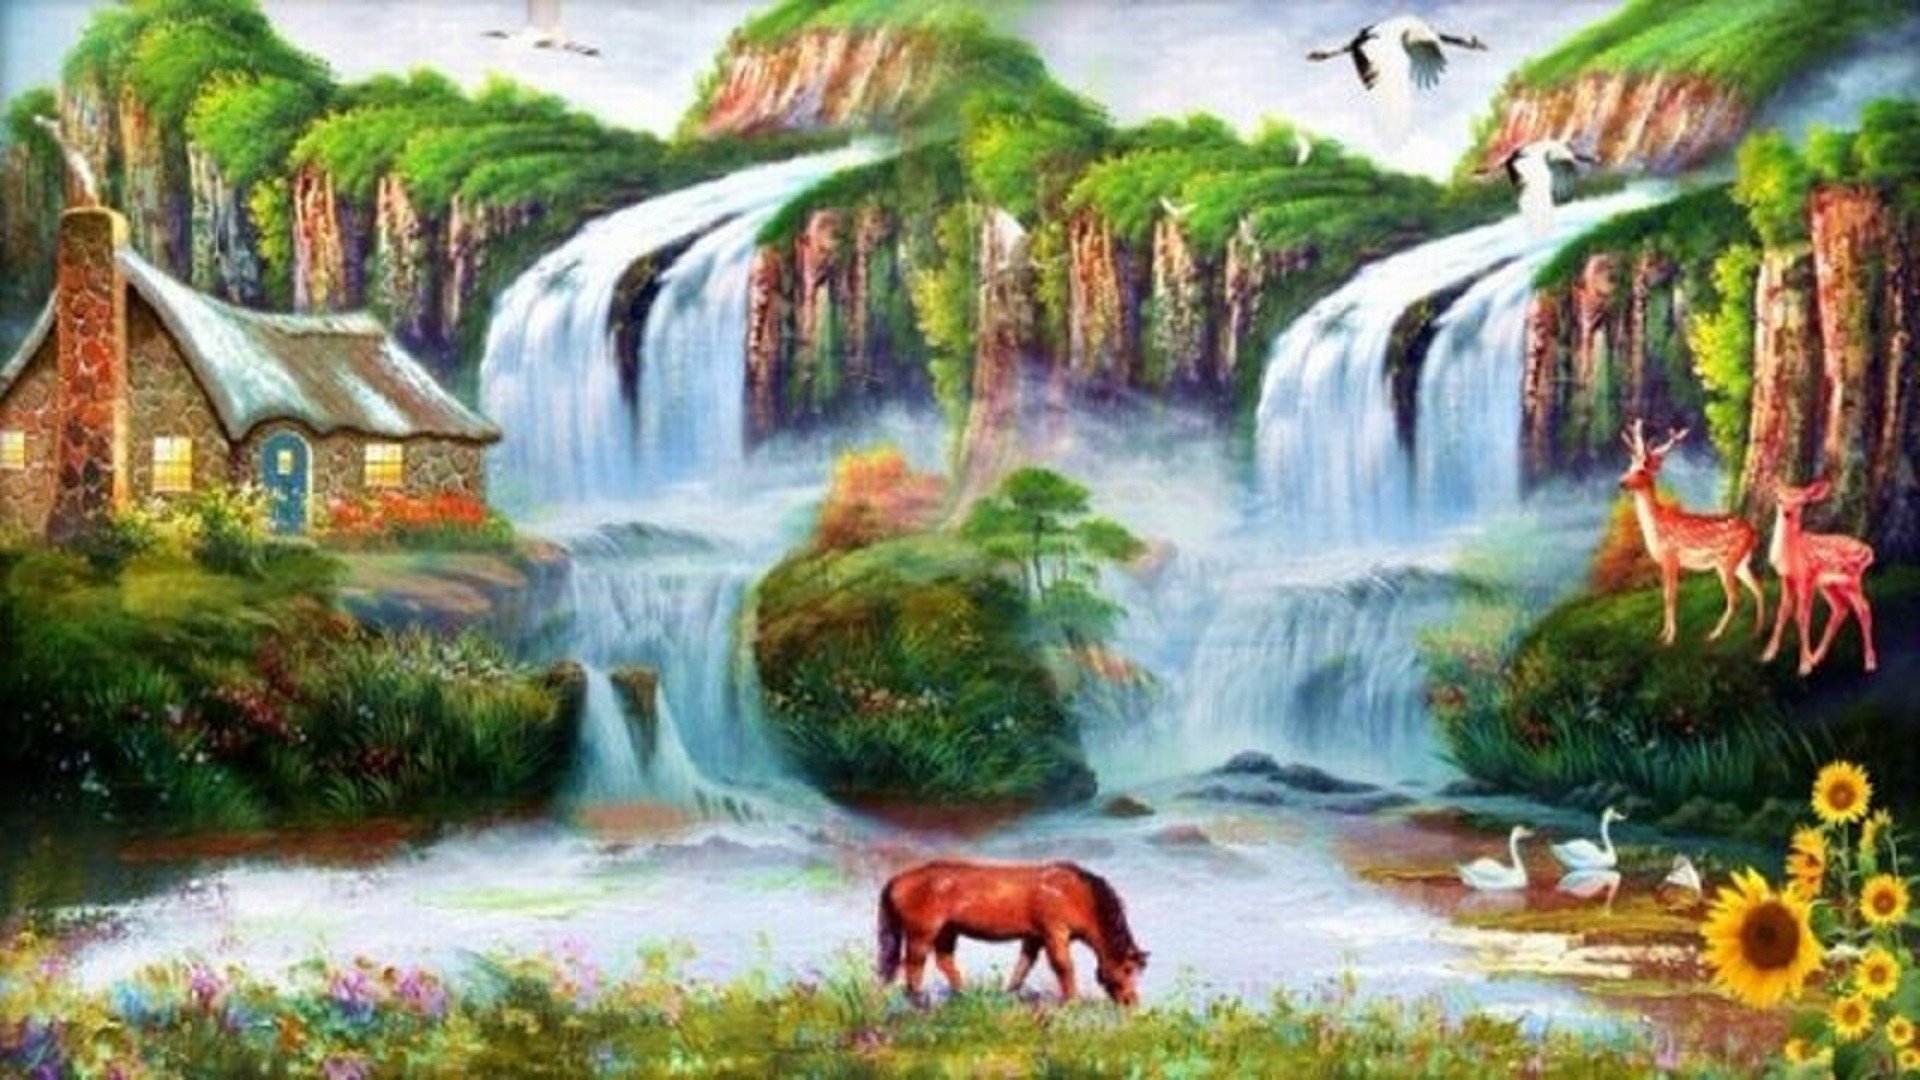 美しいhd壁紙のダウンロード,自然の風景,滝,自然,水資源,ペインティング